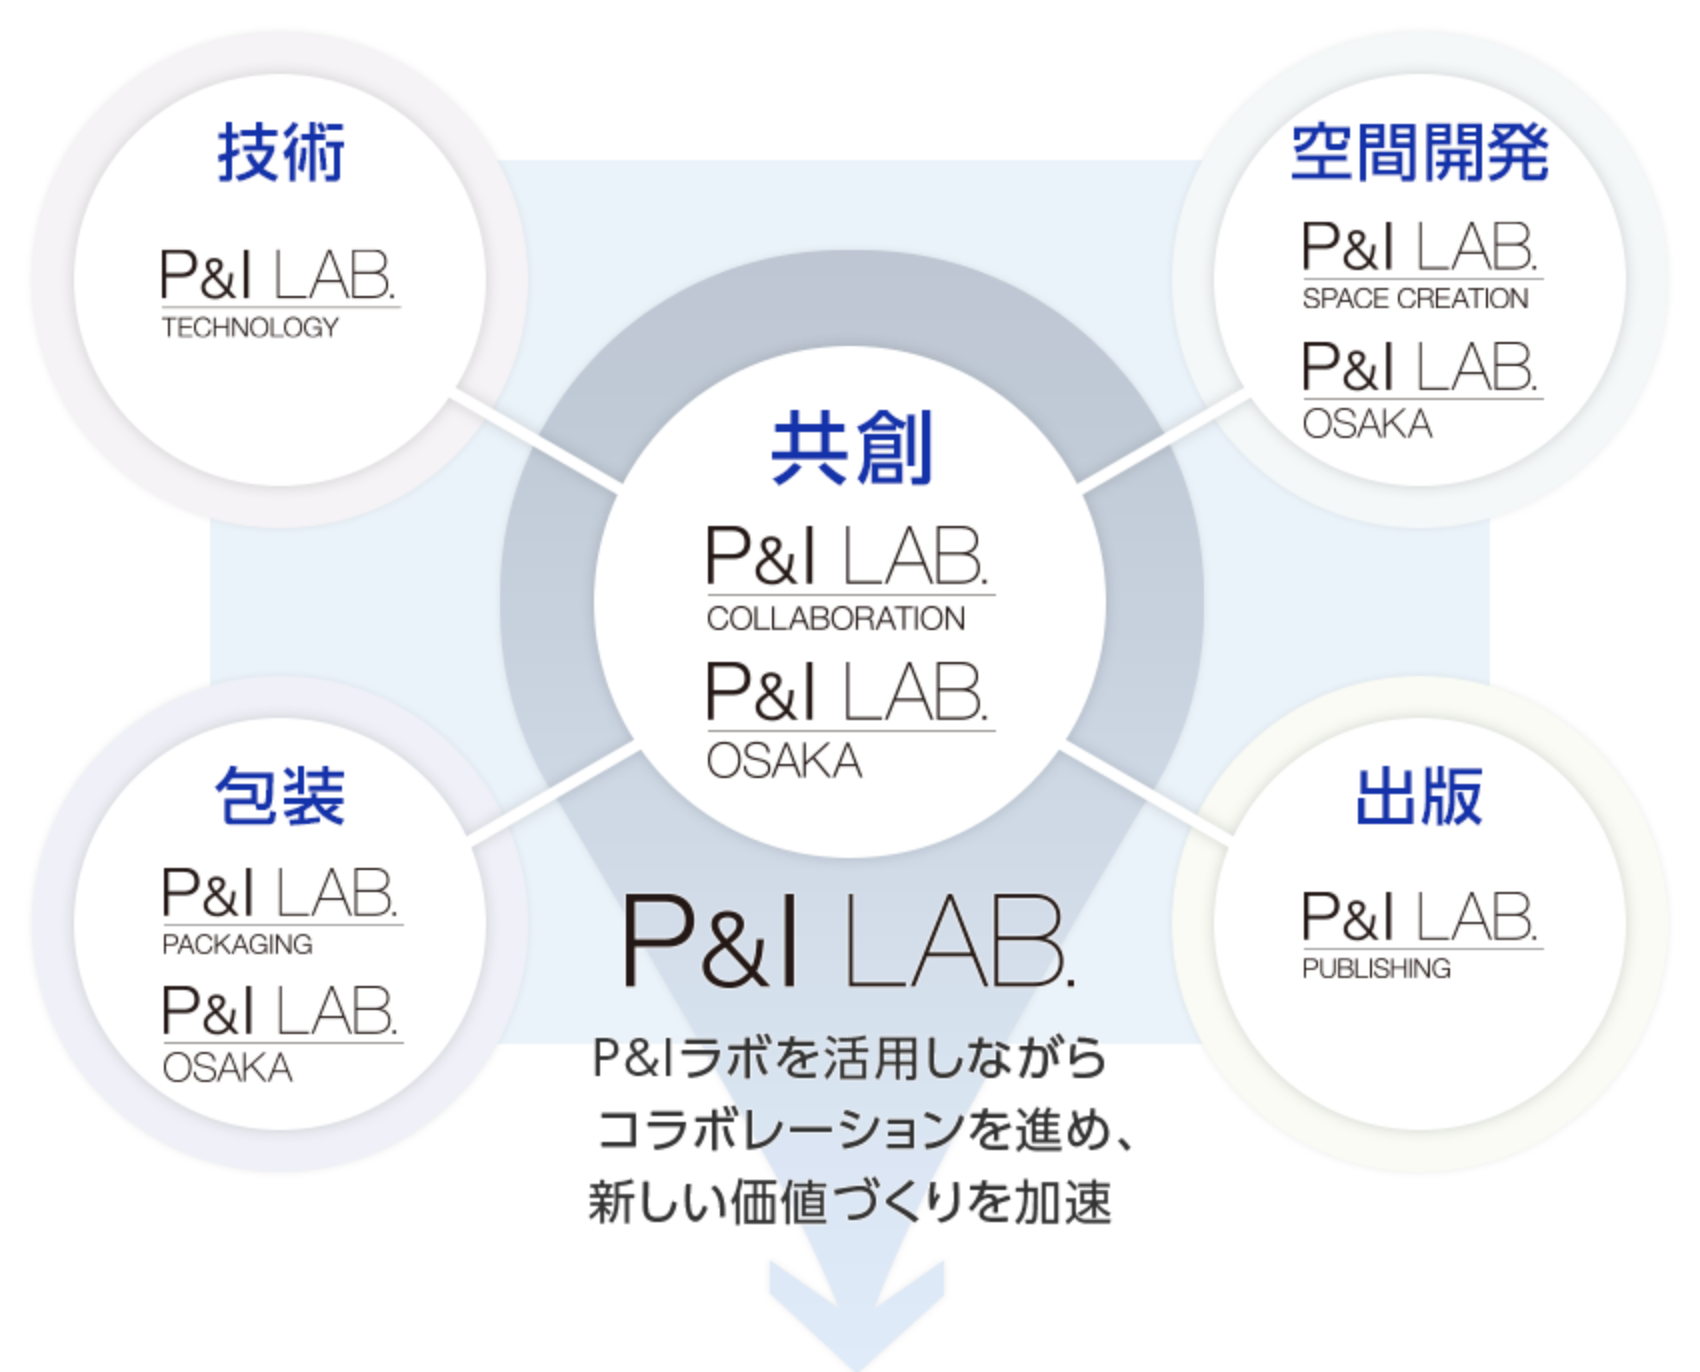 P＆I LAB：P＆Iラボを活用しながらコラボレーションを進め、新しい価値づくりを加速。P＆I LABの相関図：共創（P＆I LAB/COLLABORATION、P＆I LAB/OSAKA）を中心に、技術（P＆I LAB/TECHNOLOGY）、空間開発（P＆I LAB/SPACE CREATION、P＆I LAB/OSAKA）、包装（P＆I LAB/PACKAGE、P＆I LAB/OSAKA）、出版（P＆I LAB/PUBLISHING）が取り囲む。それらがグループビジョン2015の4つの成長領域へ伸びていく。